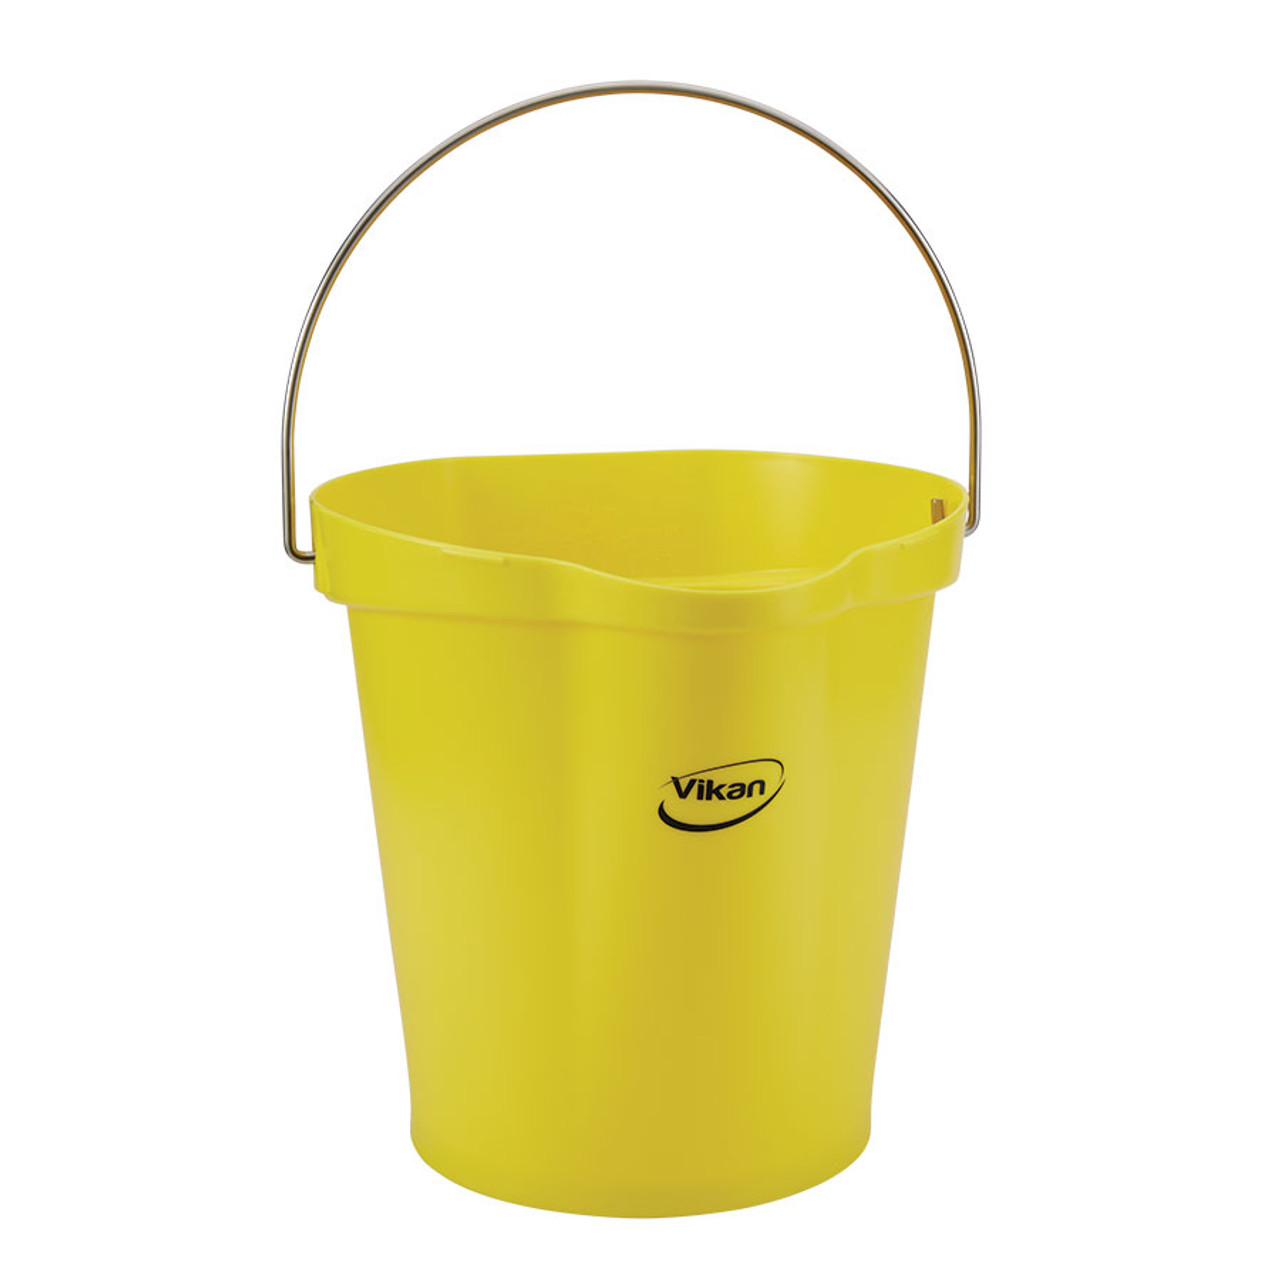 Vikan 56866 3 Gallon Bucket, Yellow